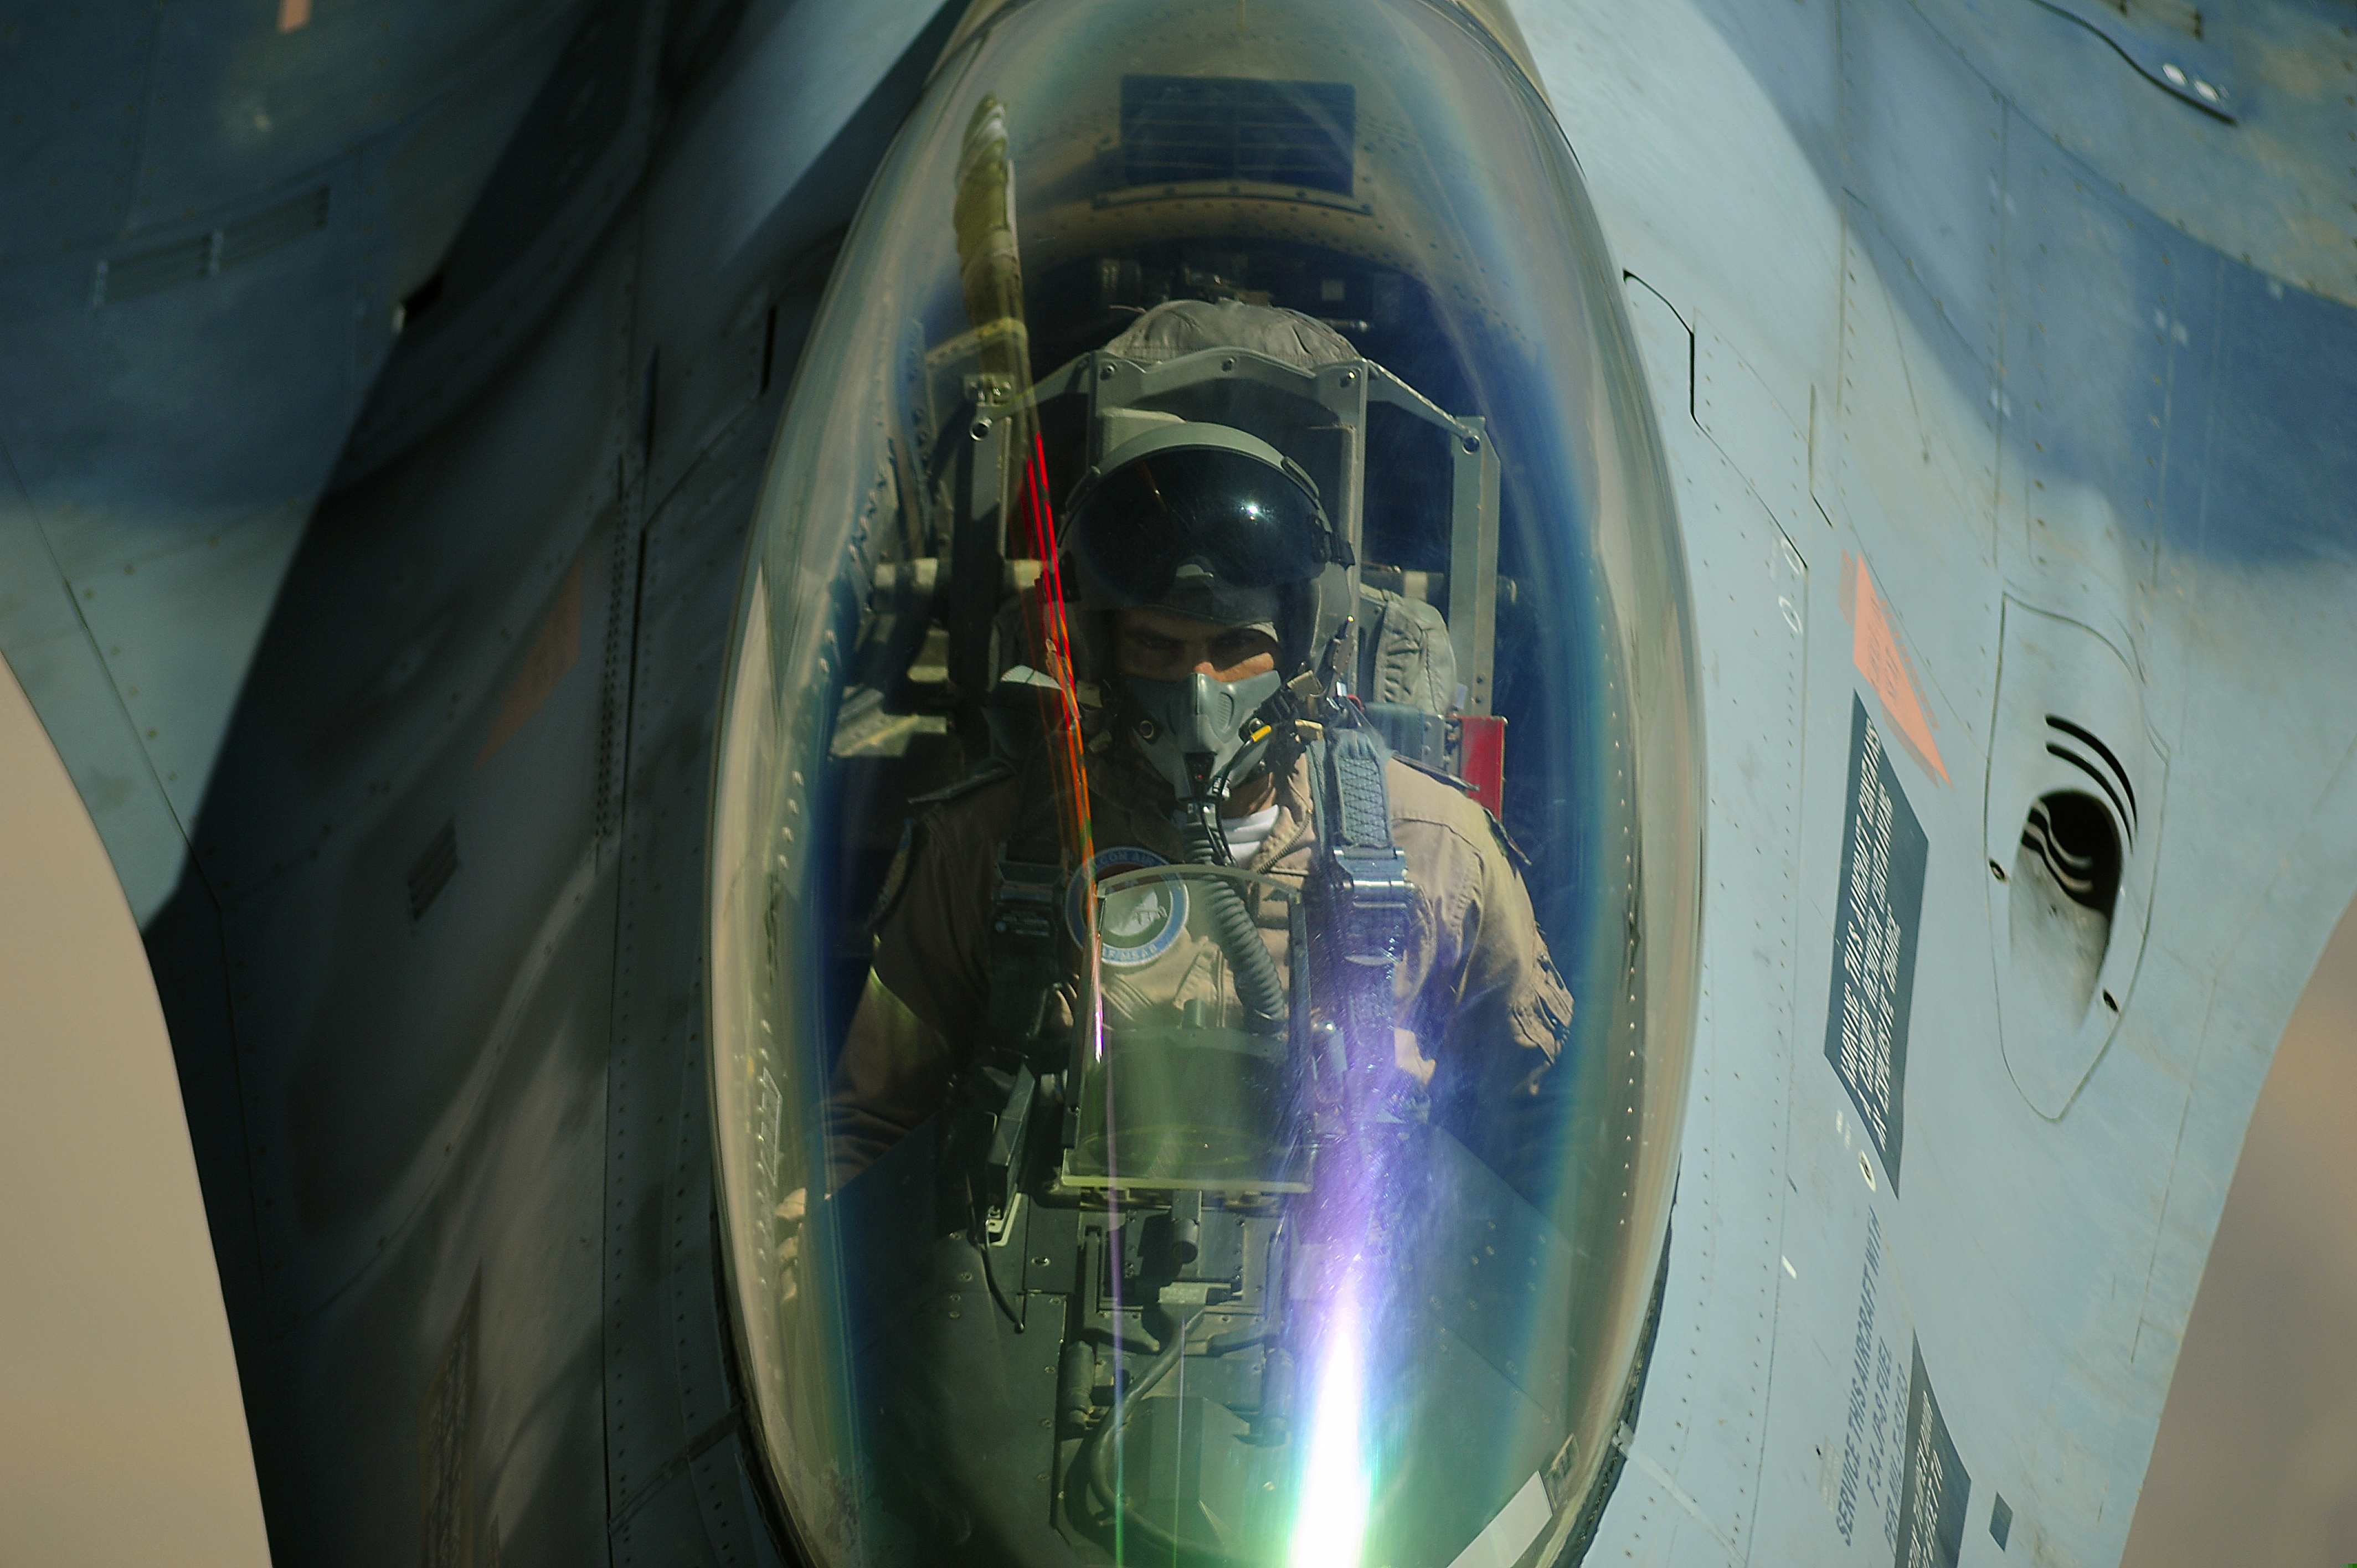 Скачать обои бесплатно Военные, General Dynamics F 16 Файтинг Фэлкон, Реактивные Истребители картинка на рабочий стол ПК